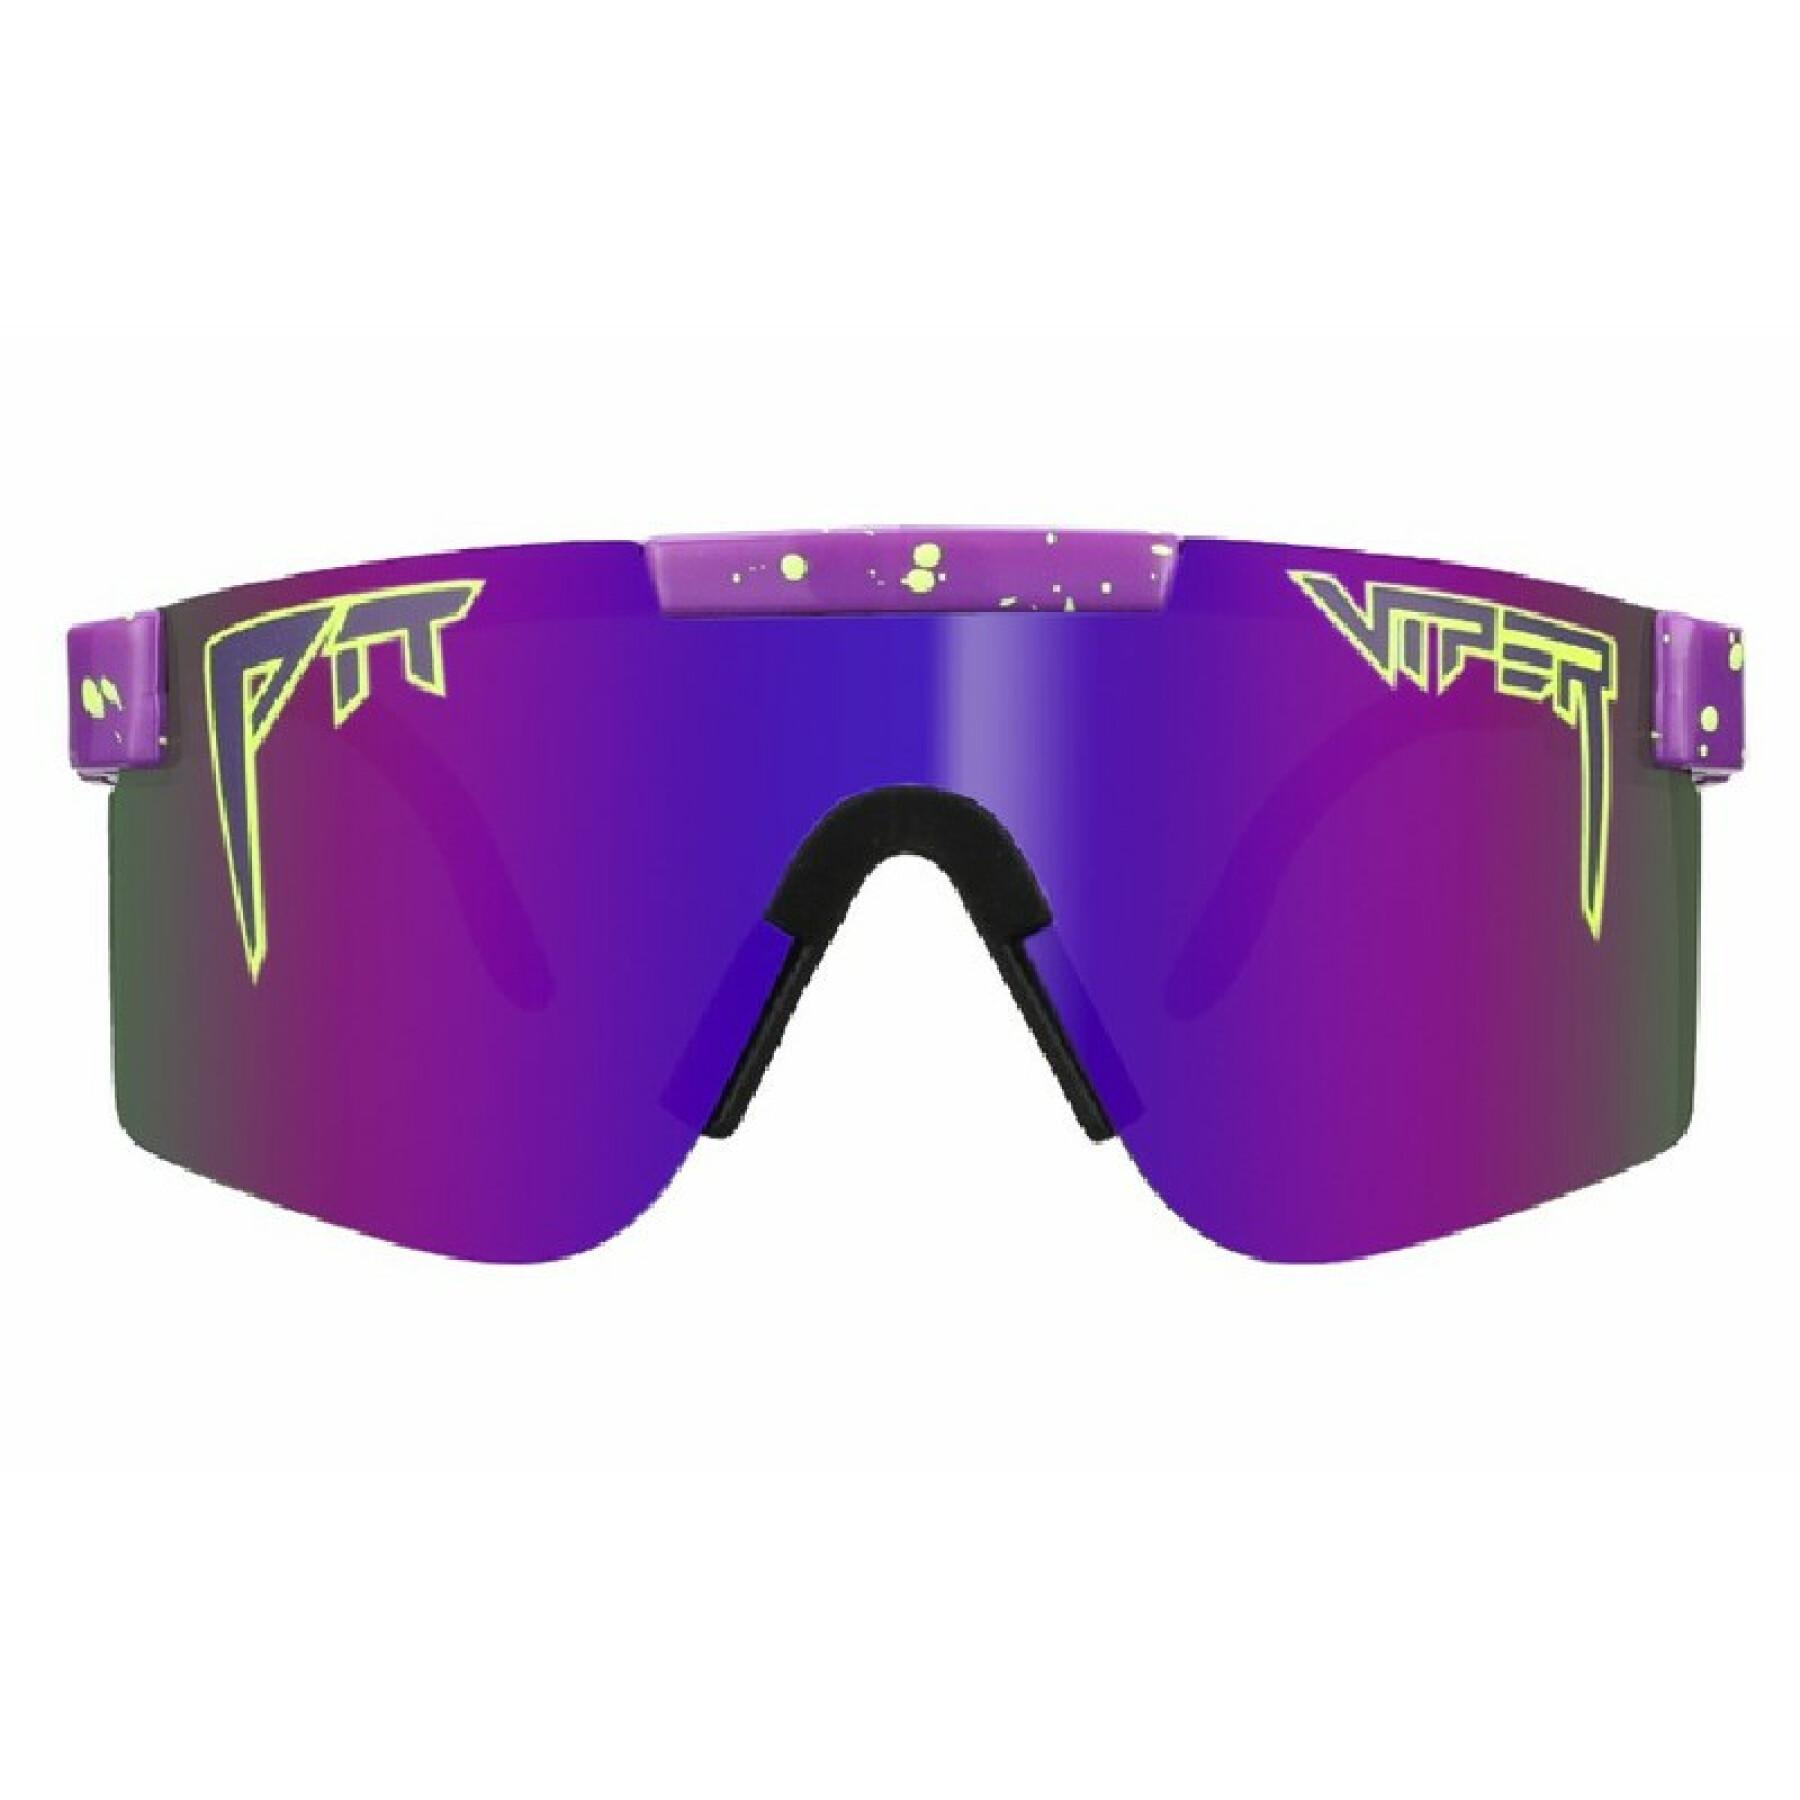 Oryginalne okulary przeciwsłoneczne z polaryzacją Pit Viper The Donatello